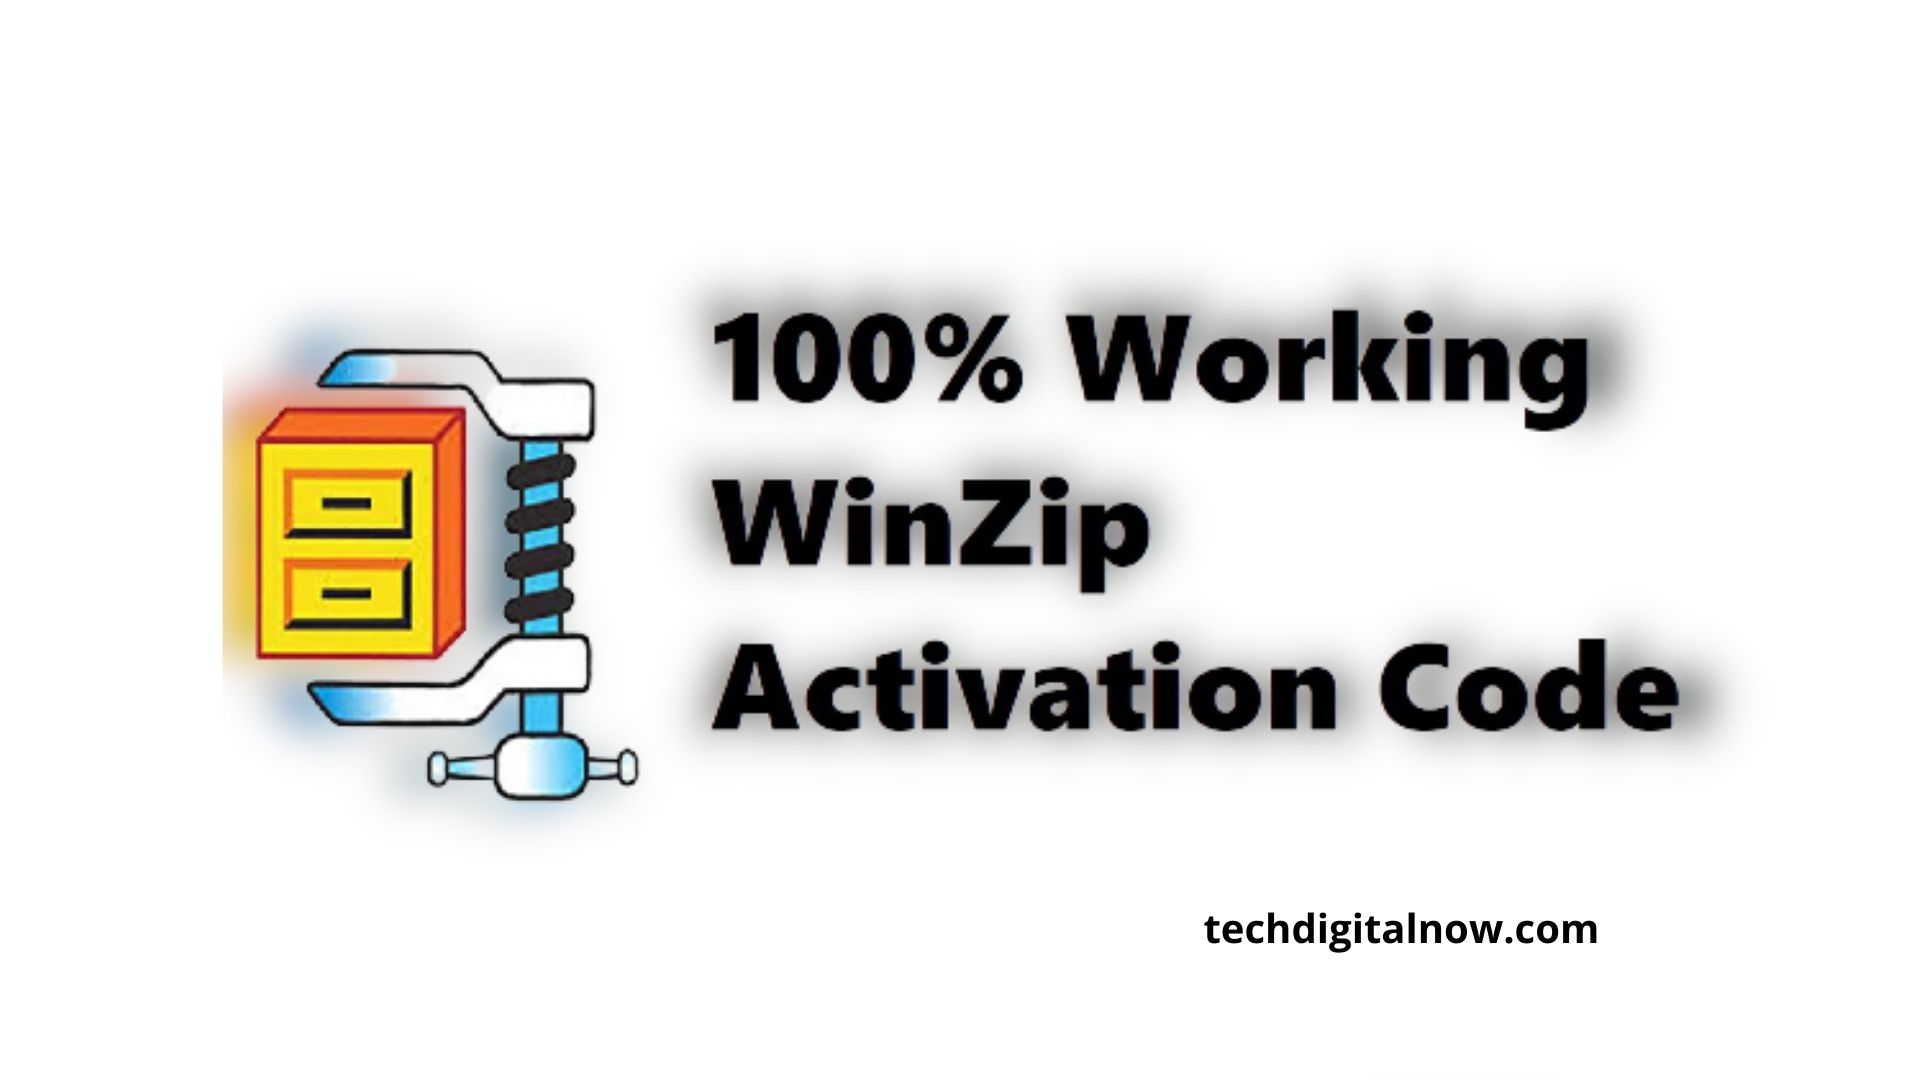 winzip 12.1 activation code free download